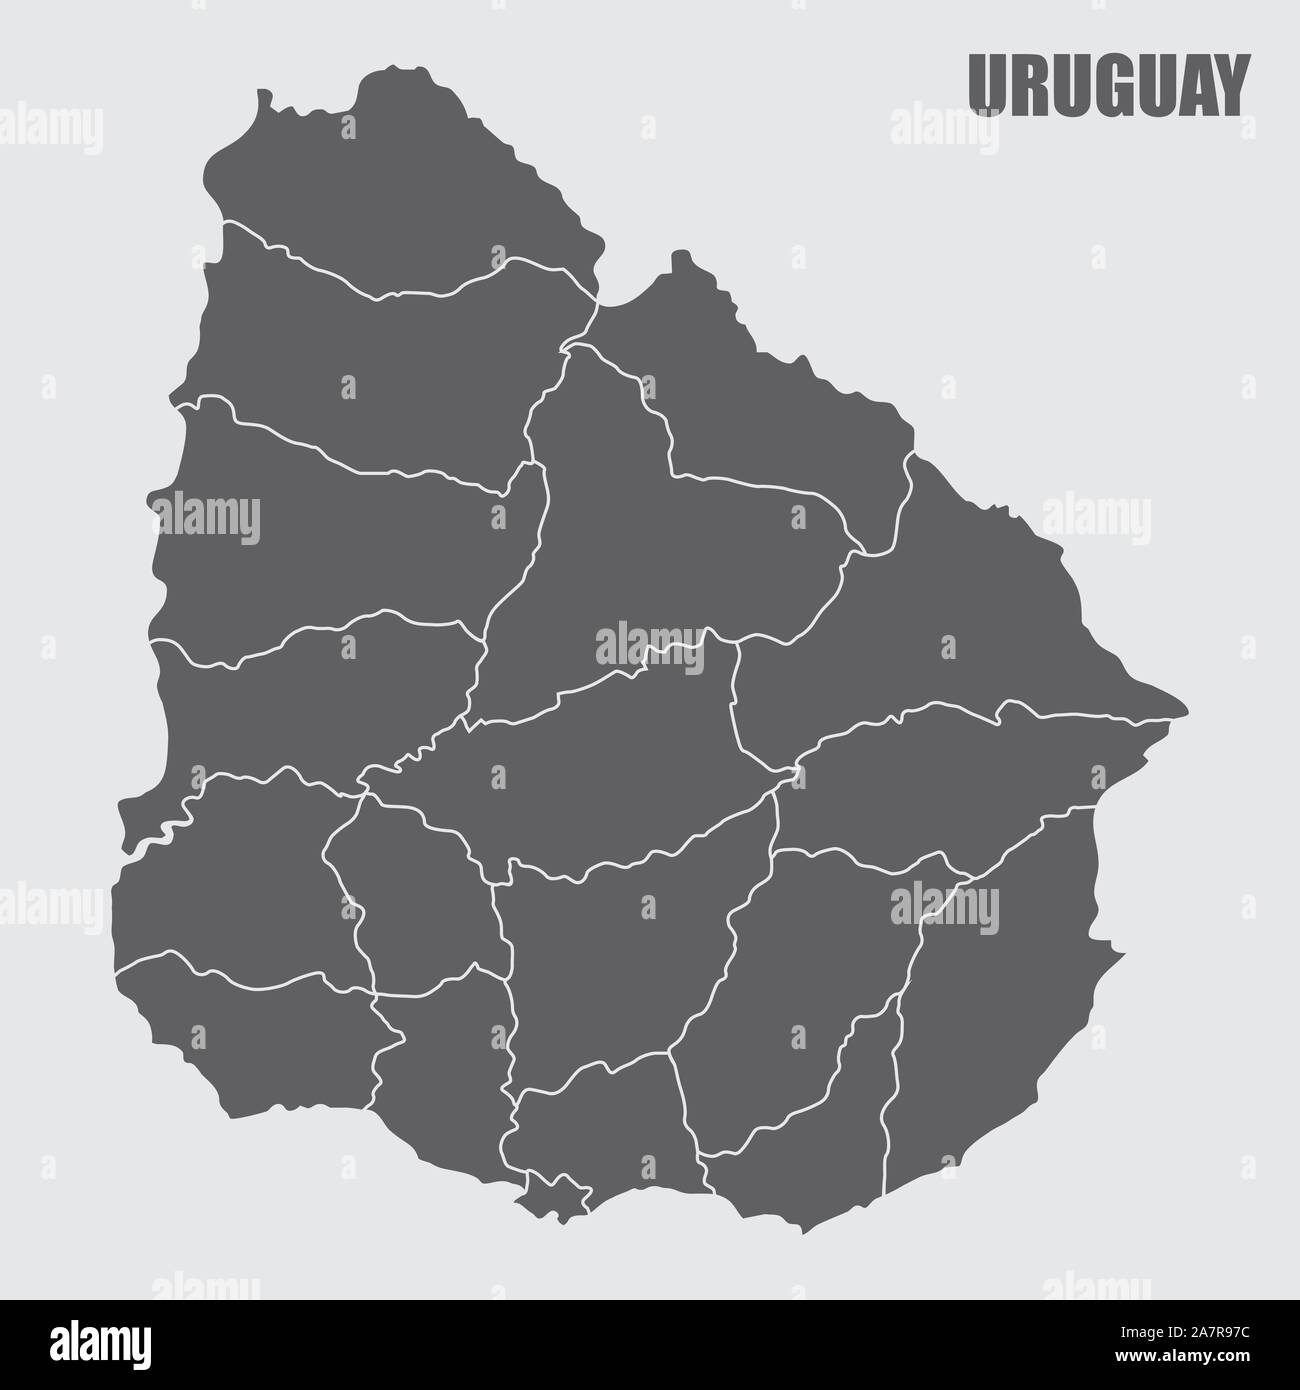 Uruguay regions map Stock Vector